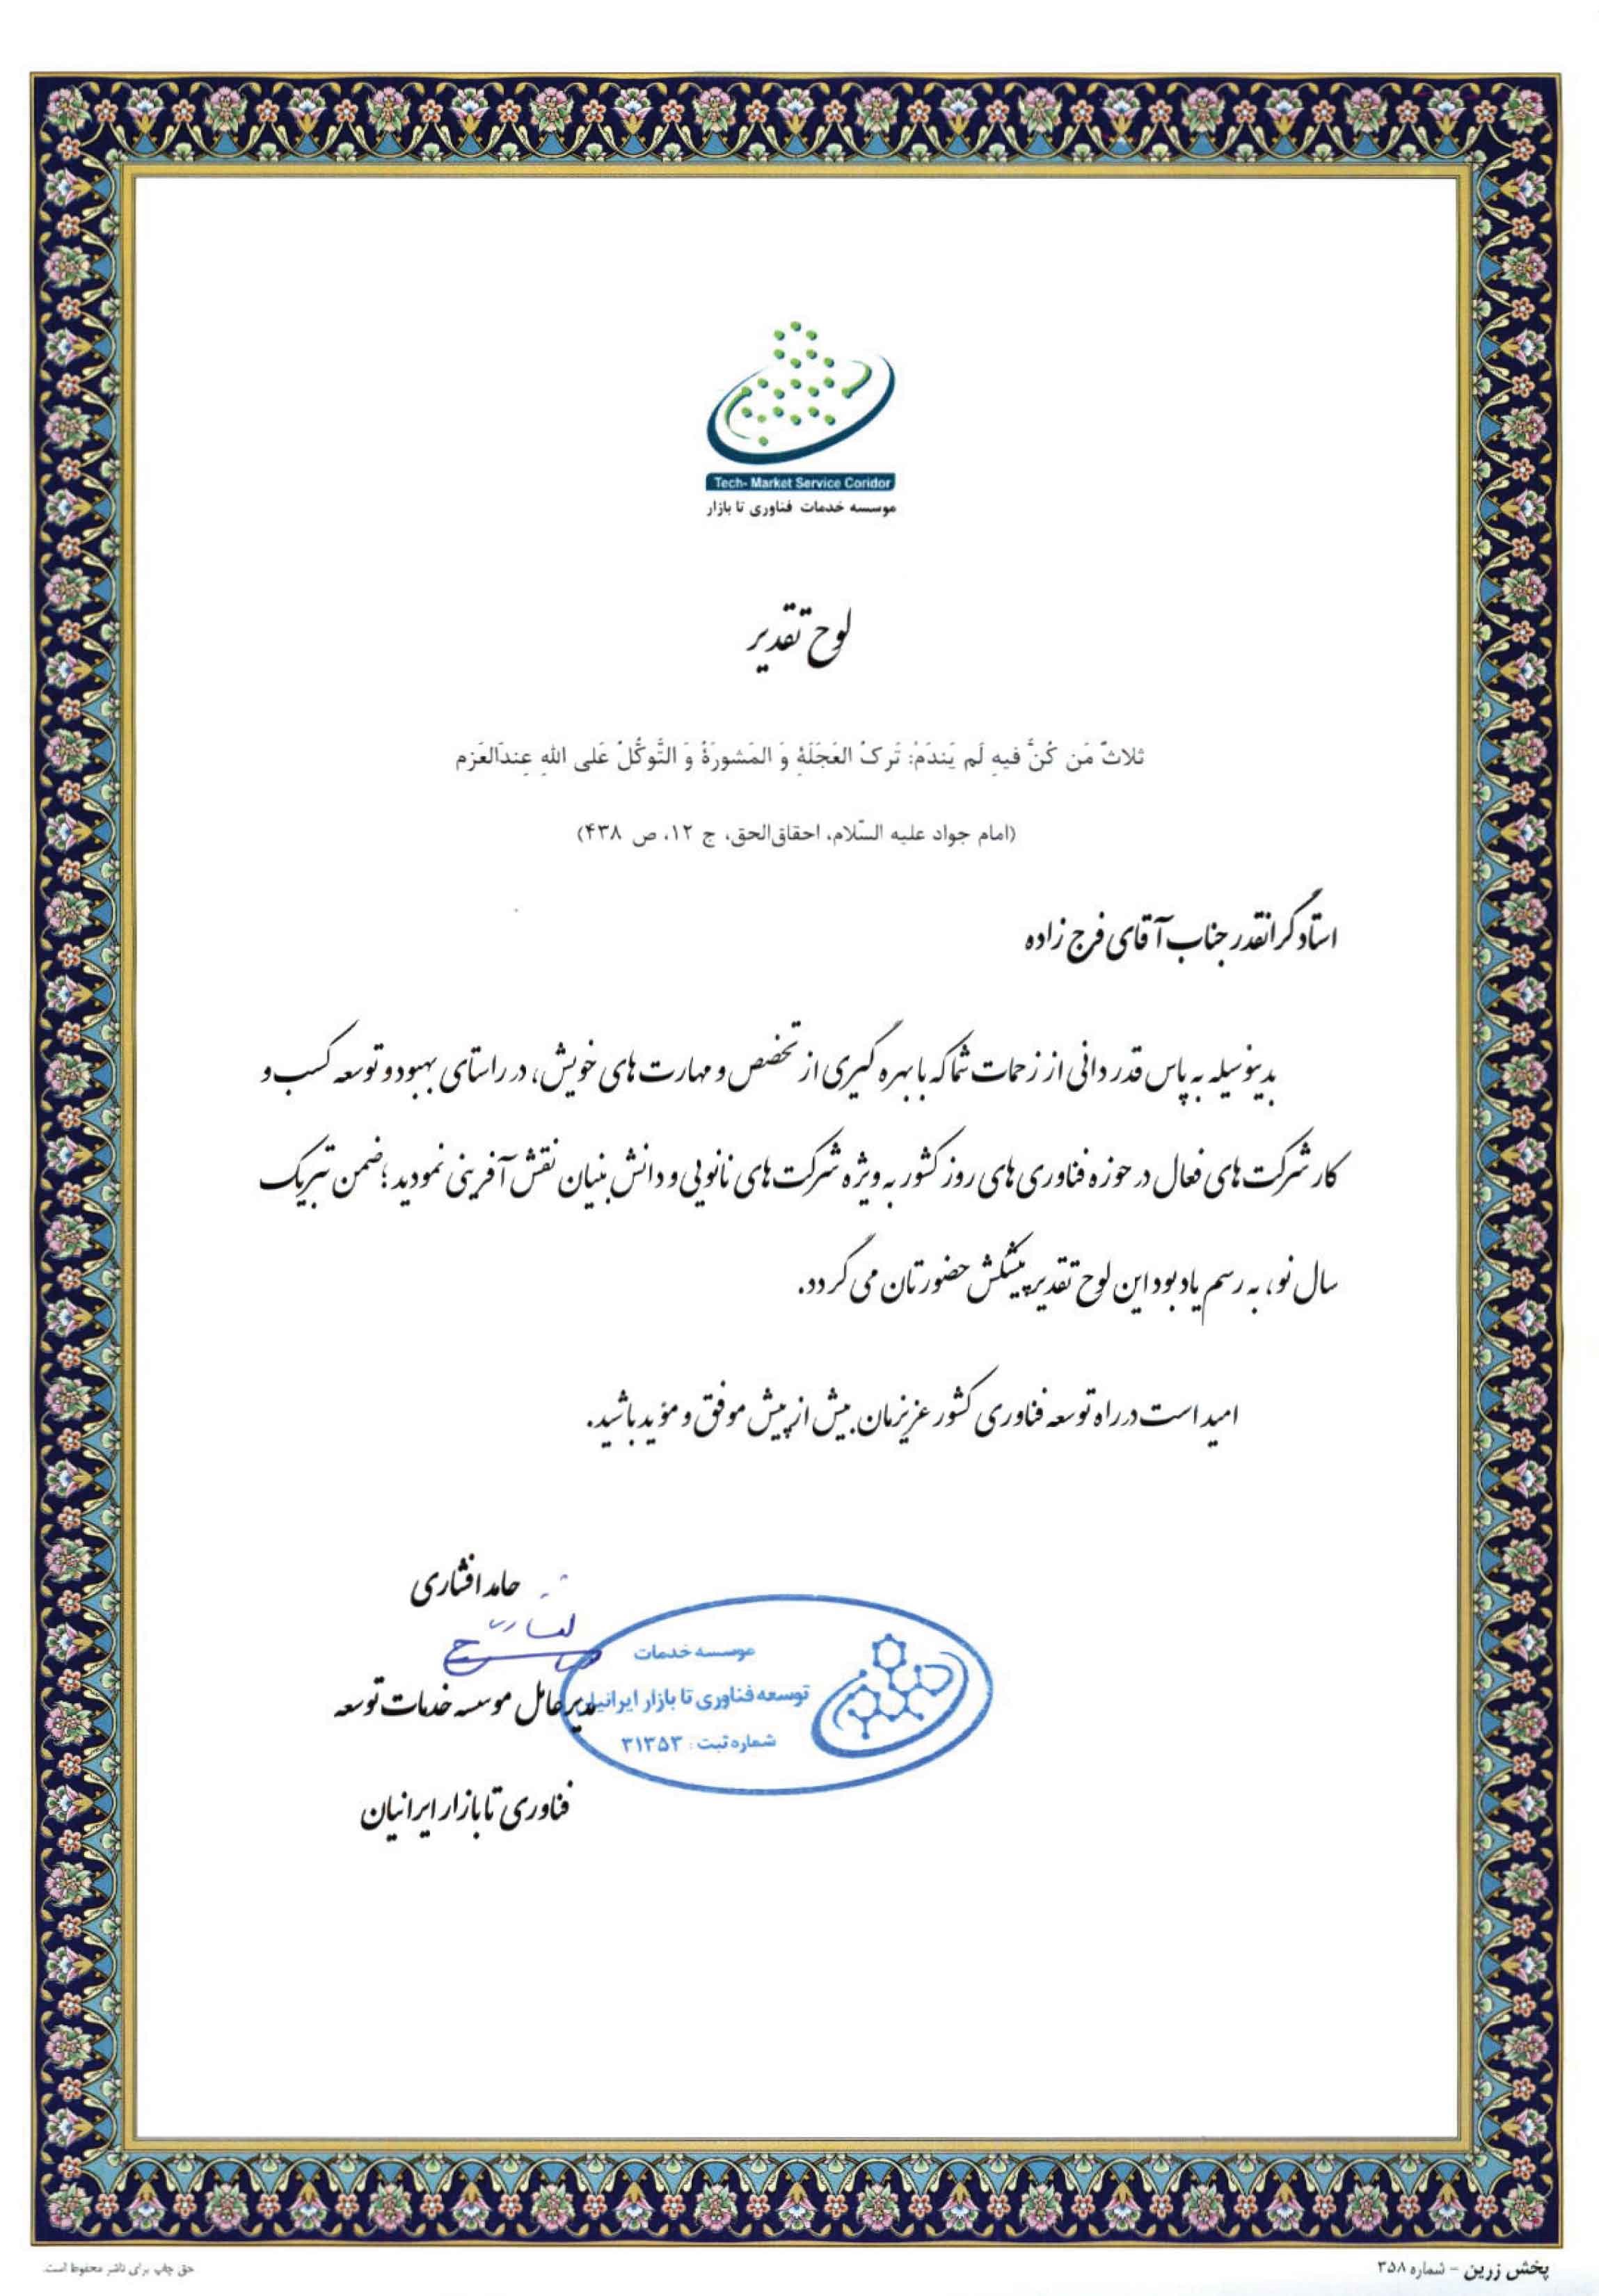 تقدیرنامه موسسه توسعه فناوری تا بازار ایرانیان